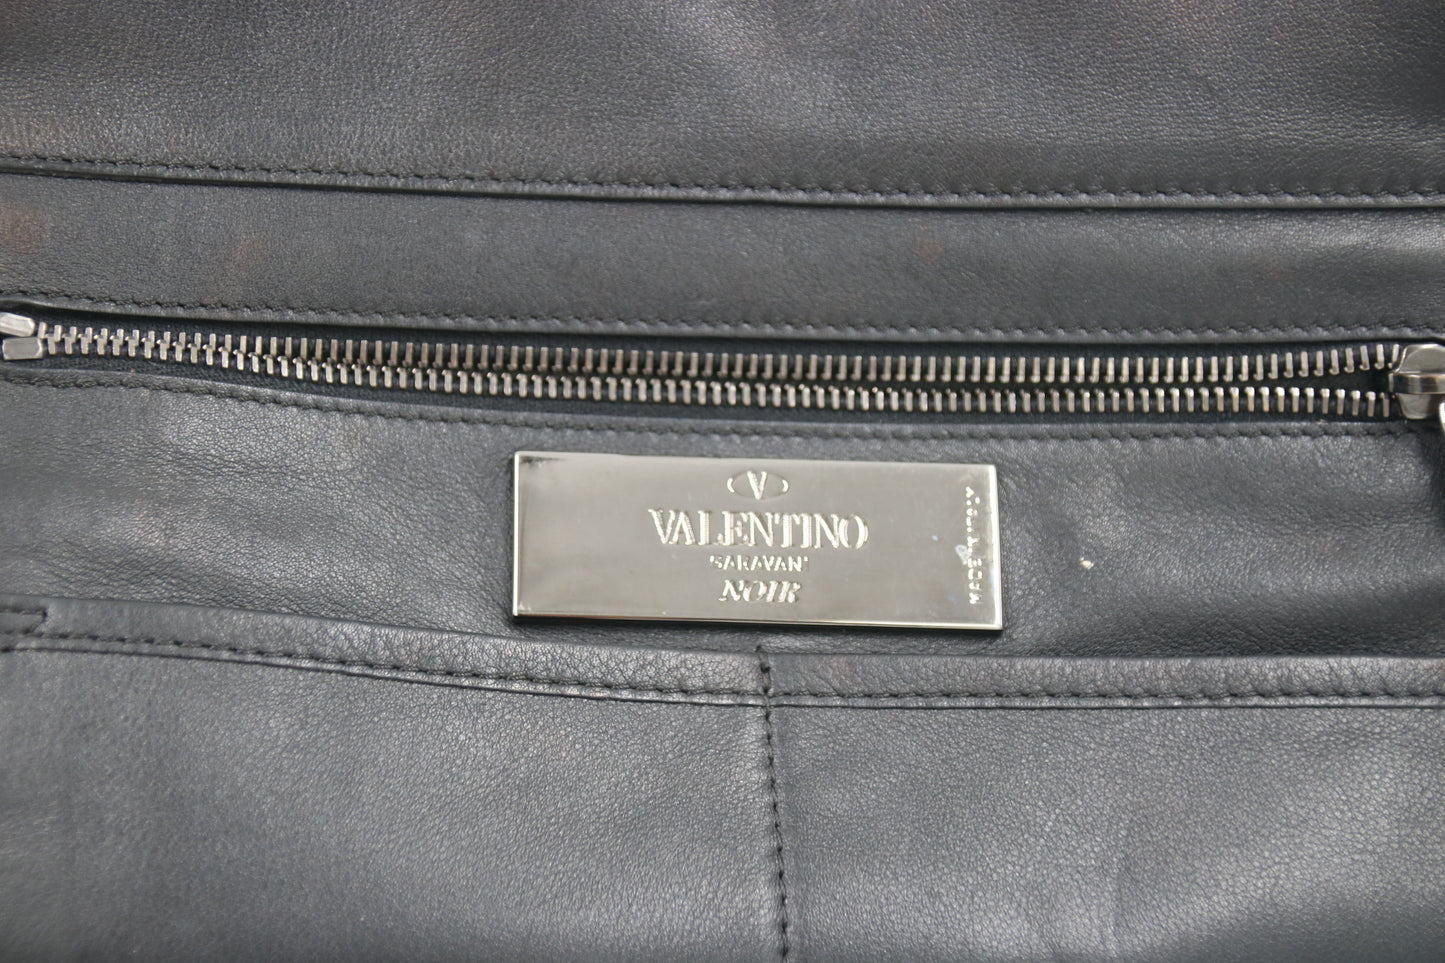 VALENTINO Noir Сумка-тоут Rockstud из ворса теленка, черная сумка